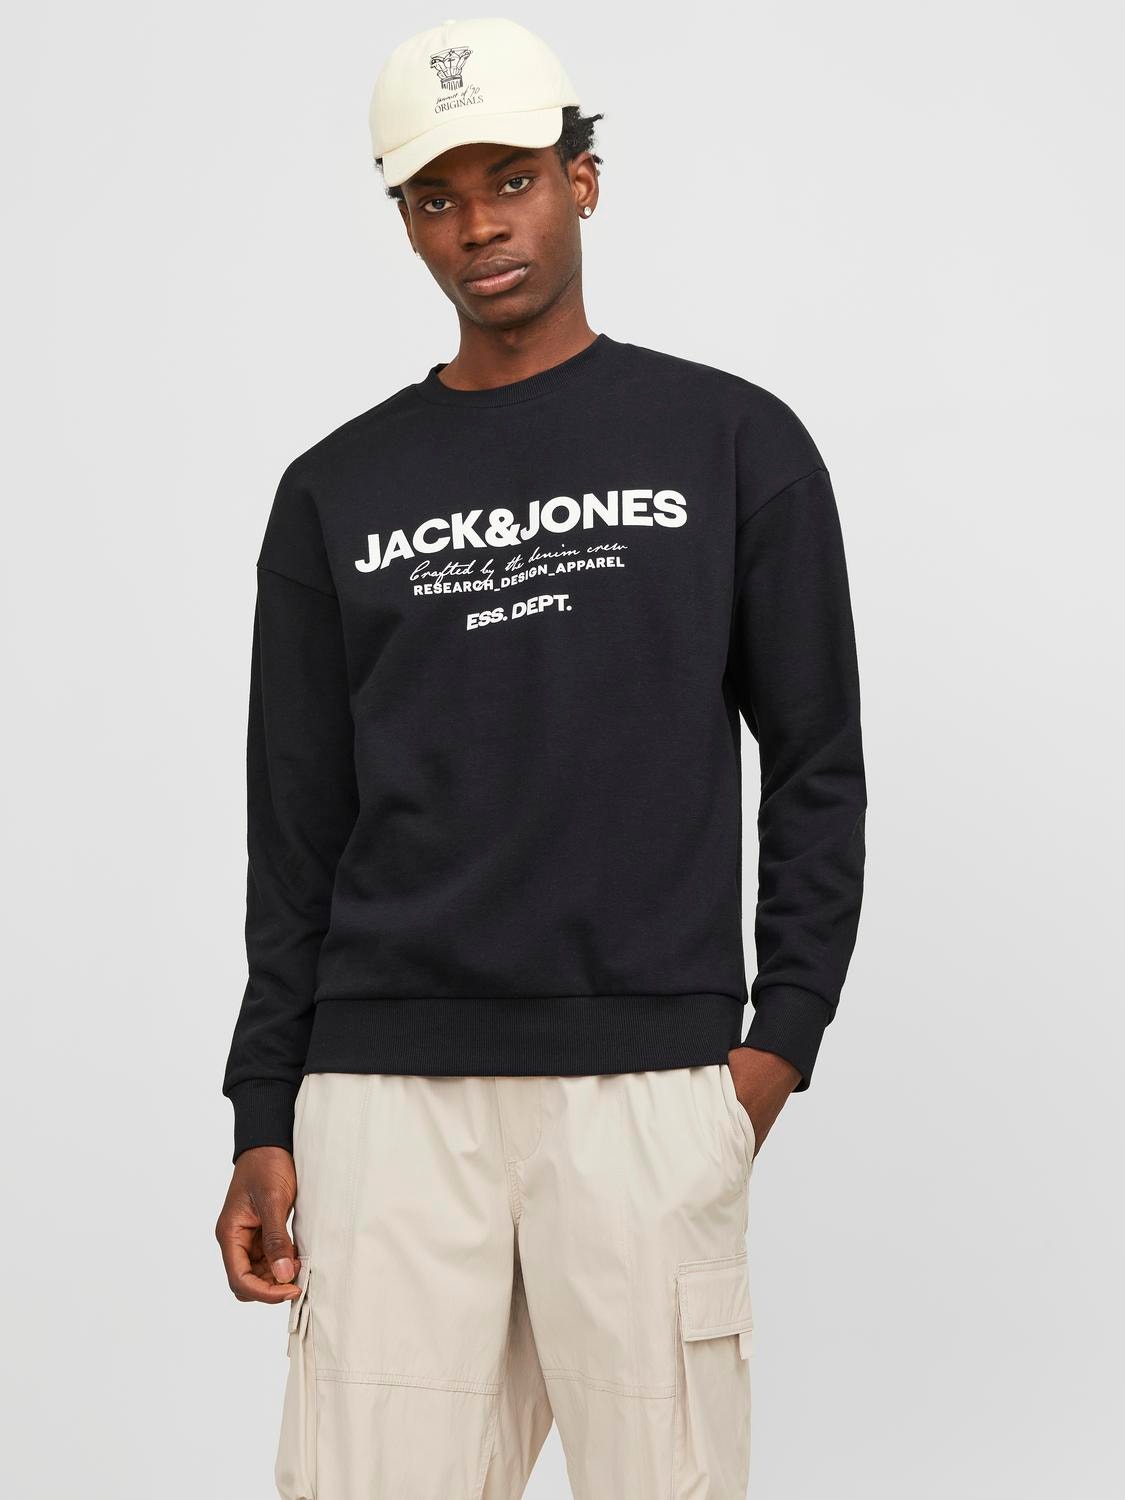 Logo Crew neck Sweatshirt with 30% discount! | Jack & Jones®